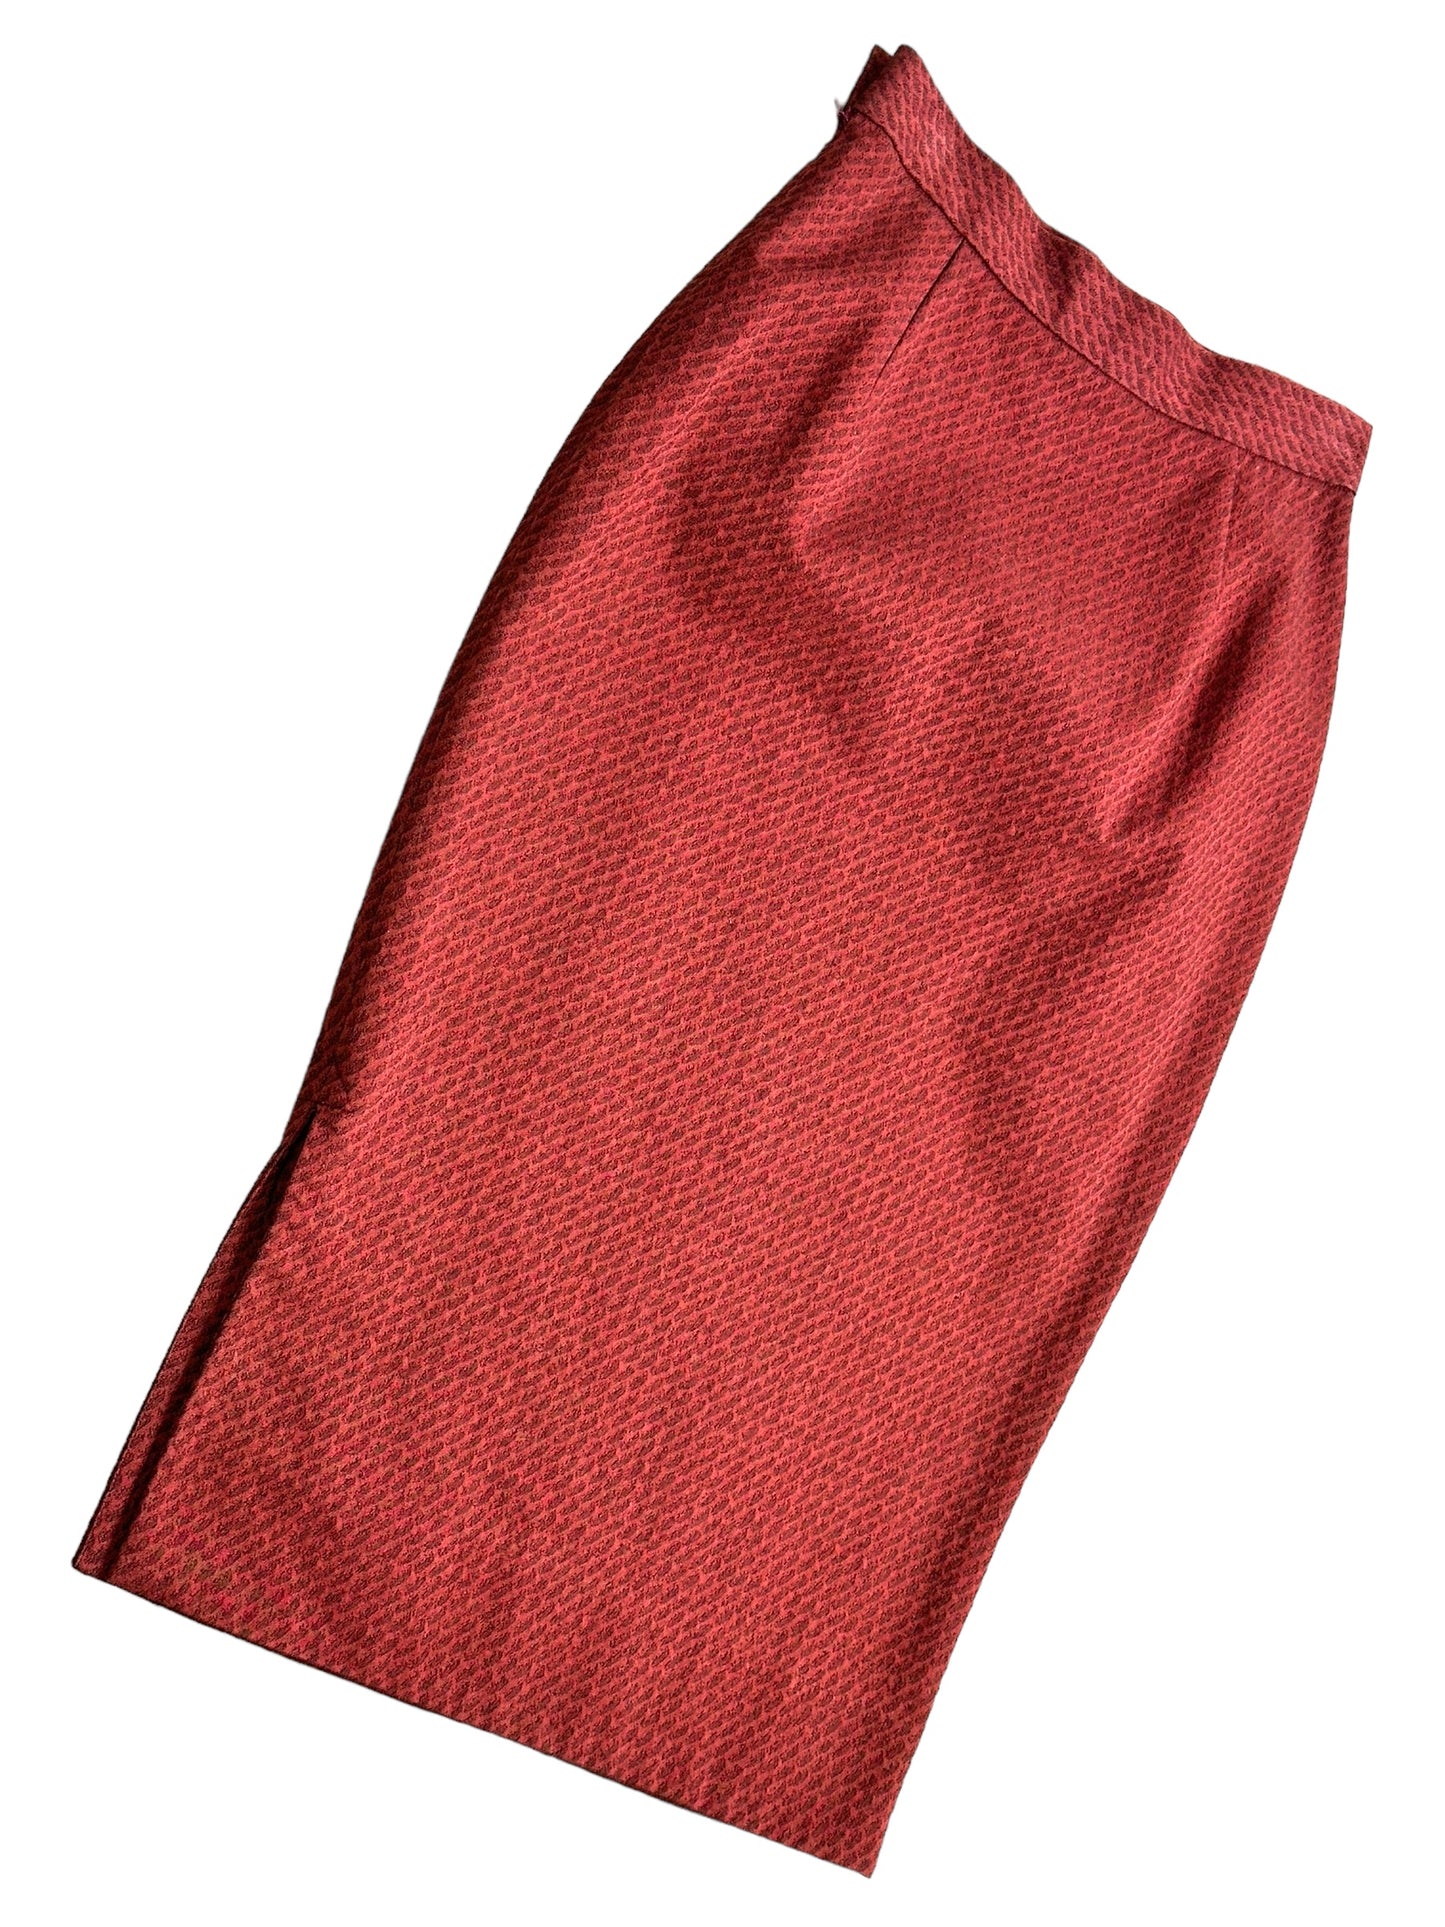 Y2K Vivienne Westwood “Red Label” Highwaisted Hatched Skirt